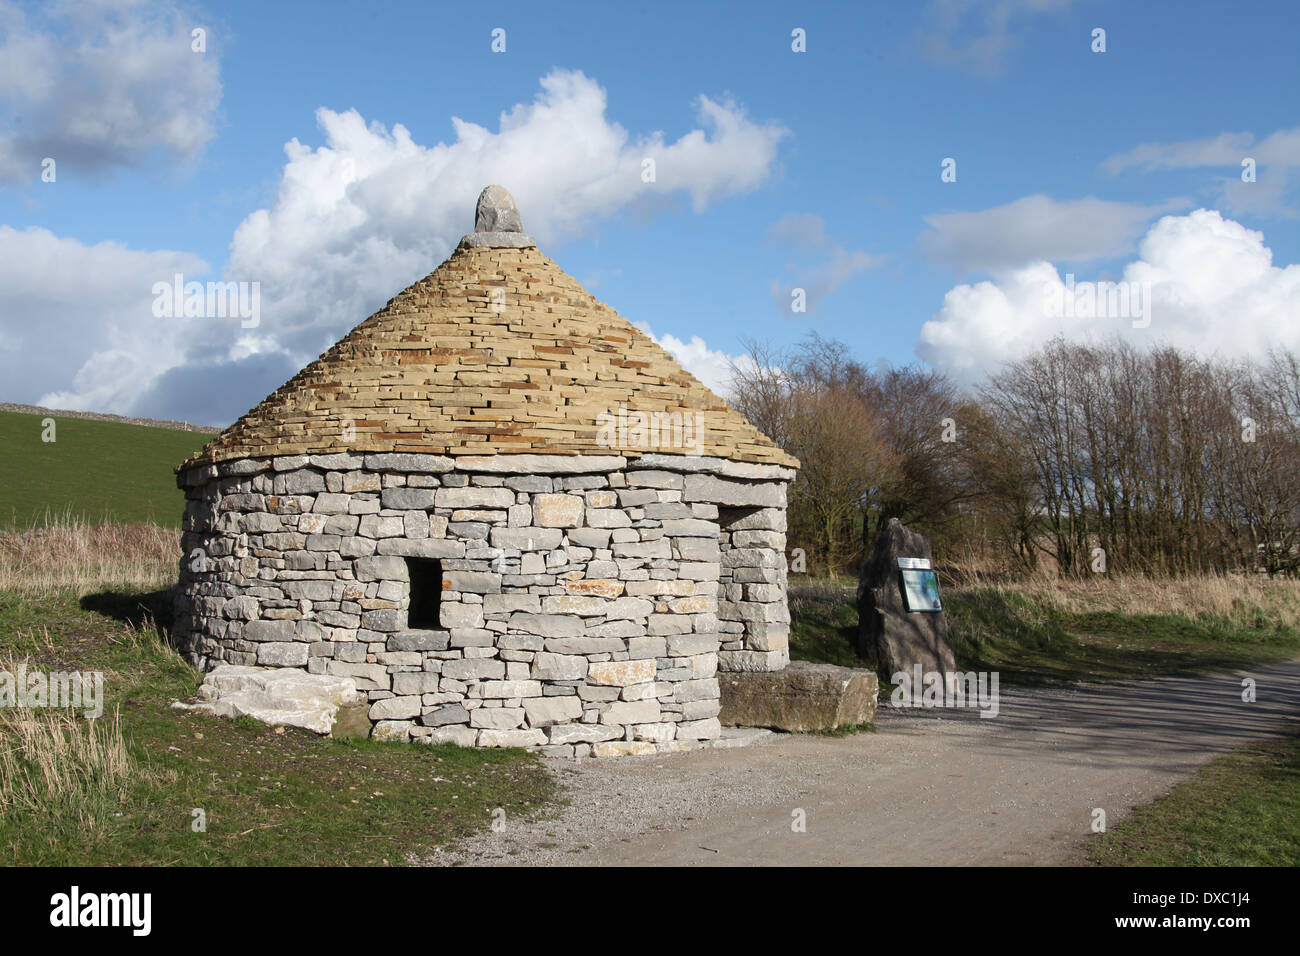 Kazun croate construit dans le Peak District à foin Persil près de Hartington par des tailleurs de pierre istrienne traditionnelle Banque D'Images